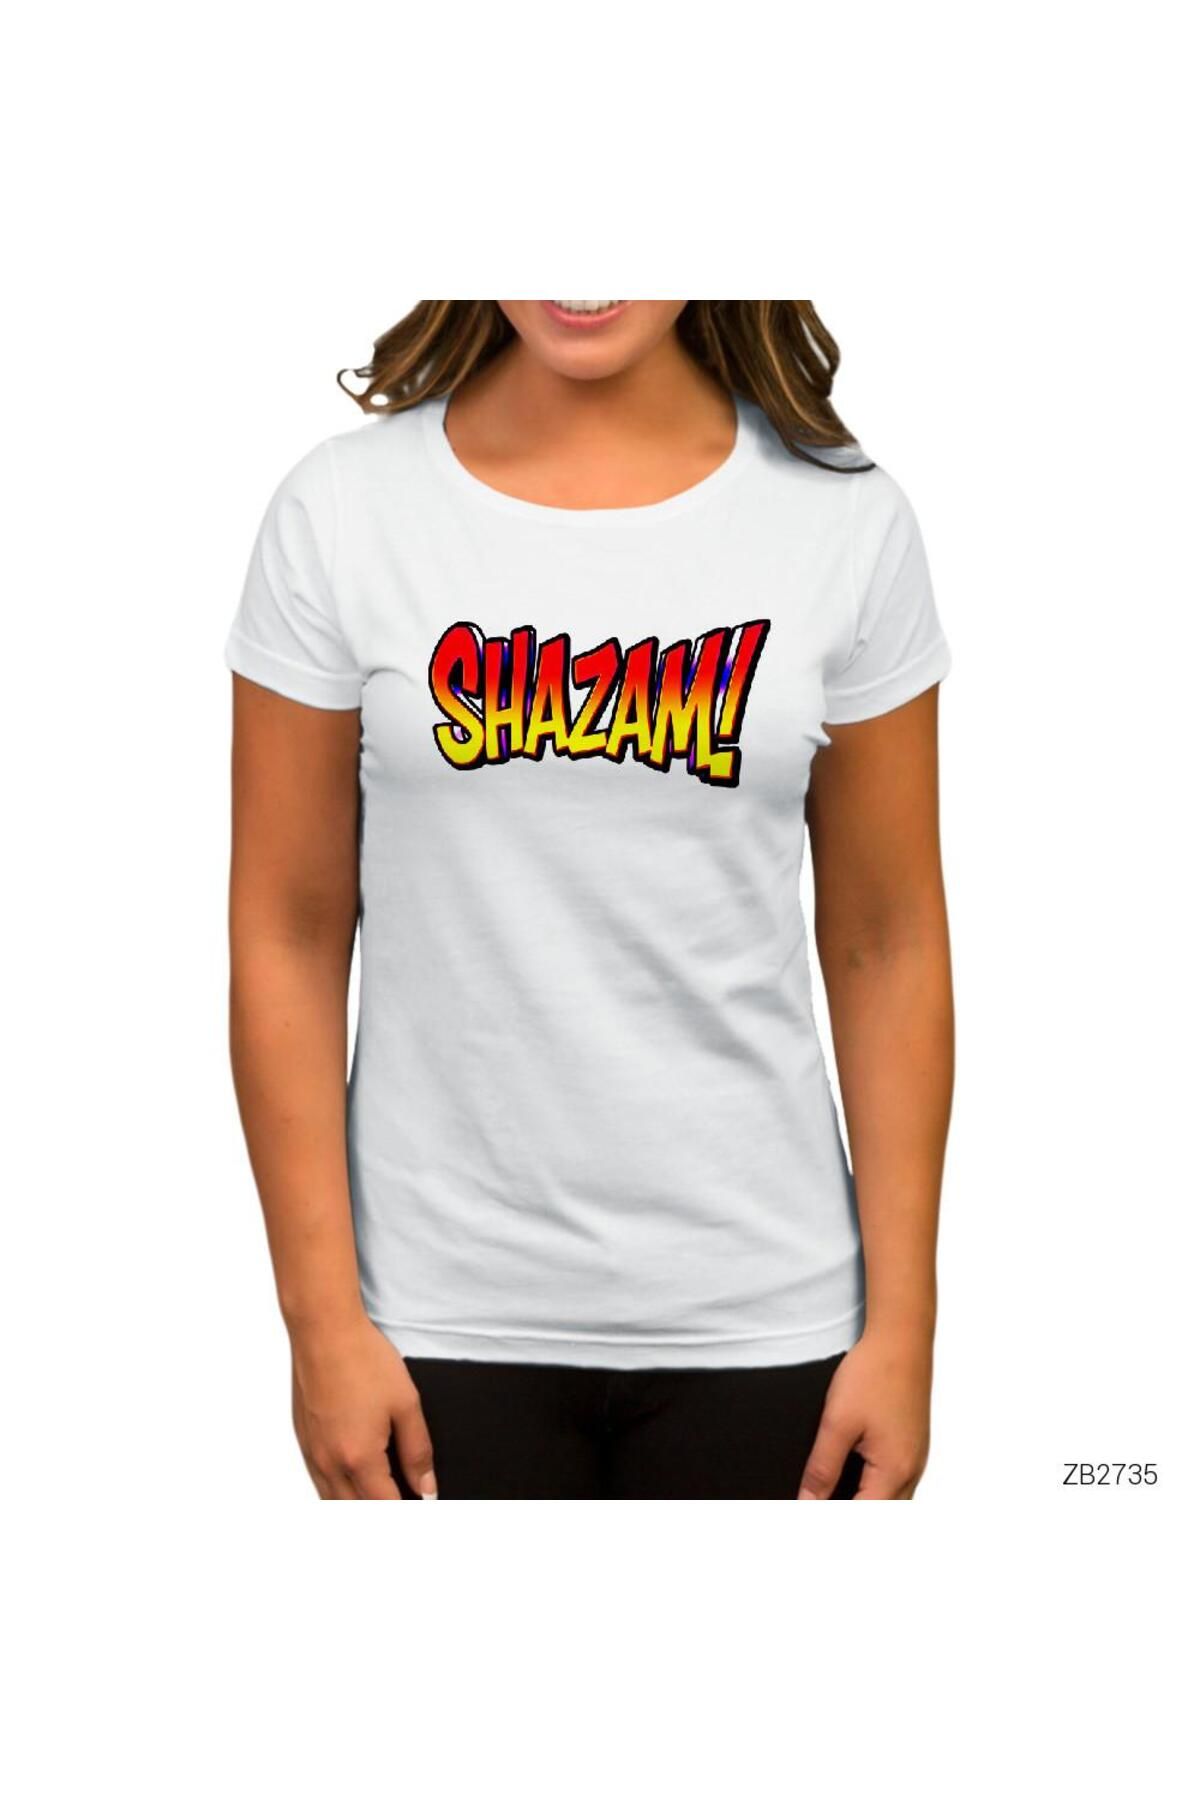 Genel Markalar Shazam Logo 2 Beyaz Kadın Tişört M Beden